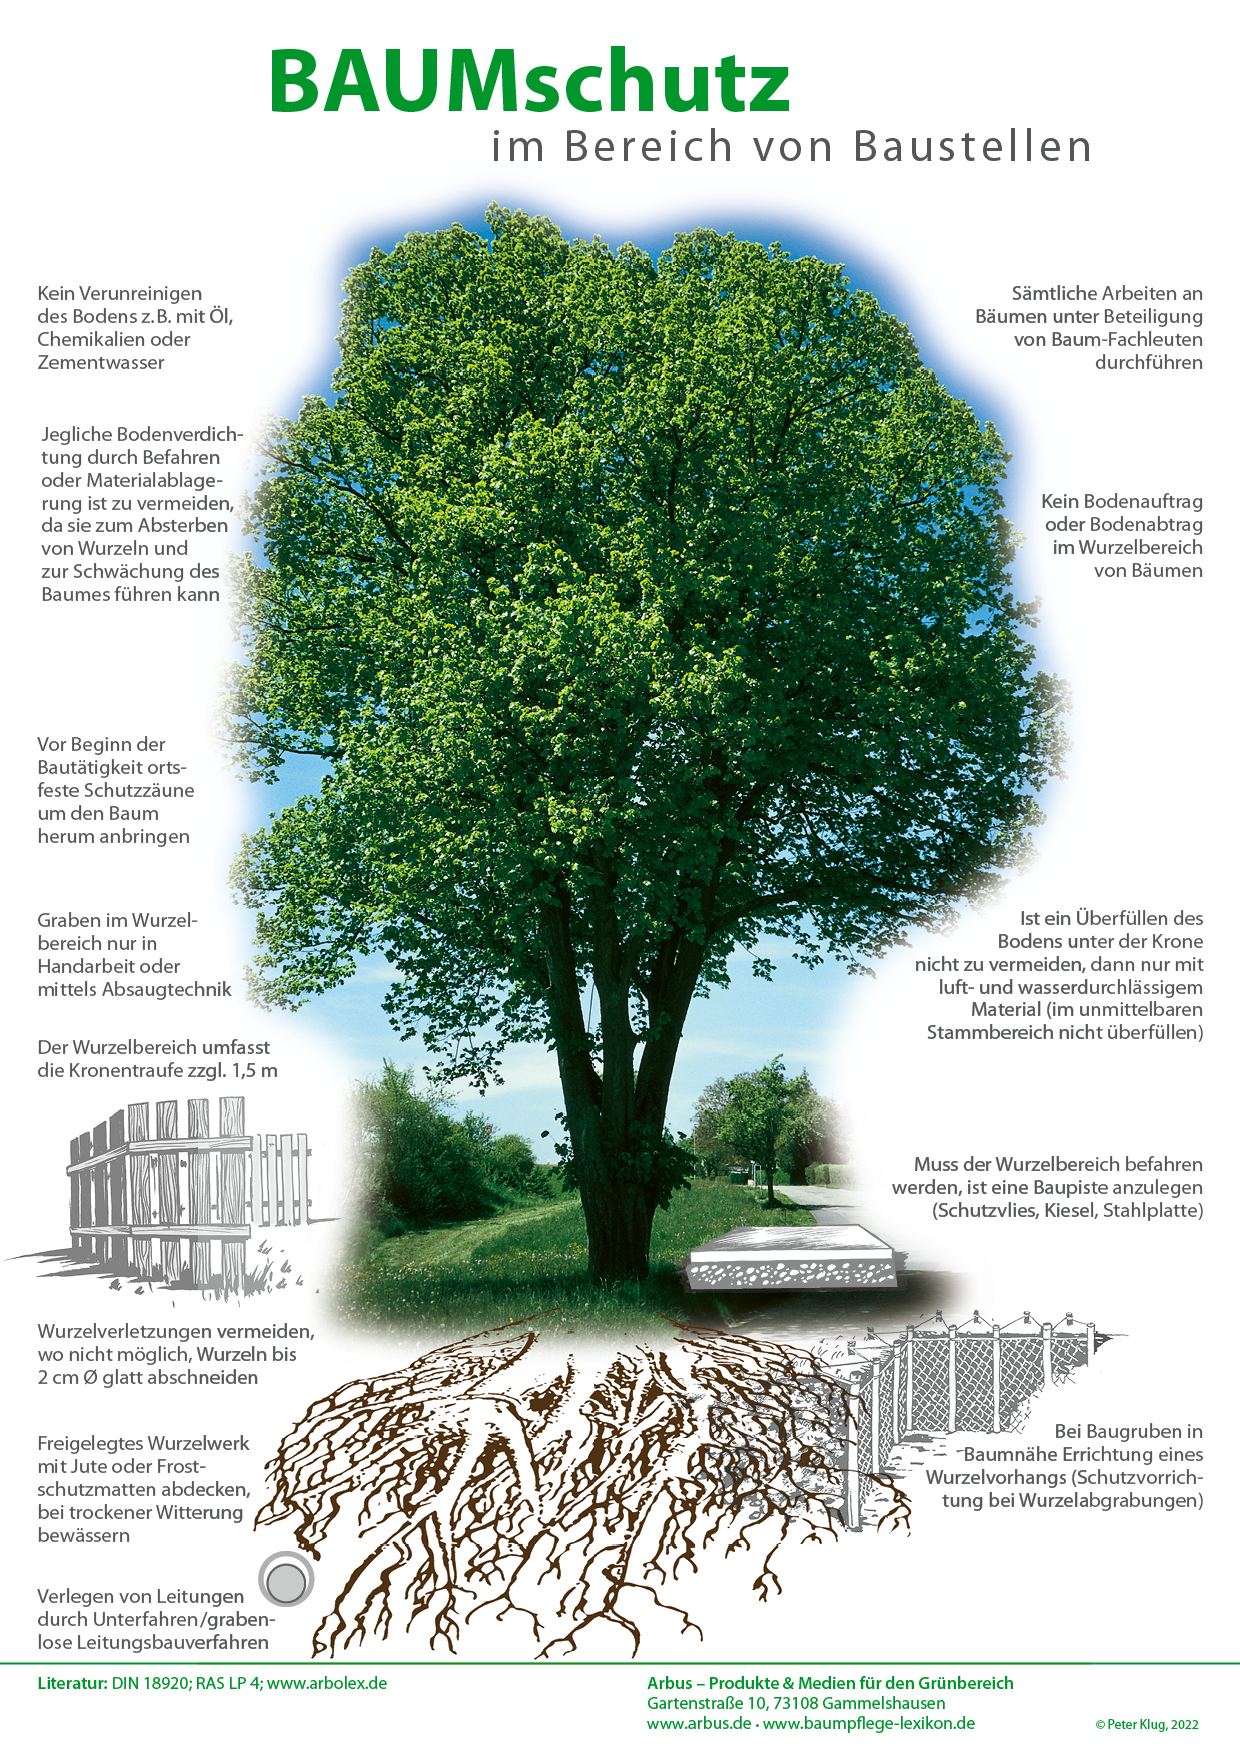 Poster: Baumschutz auf Baustellen